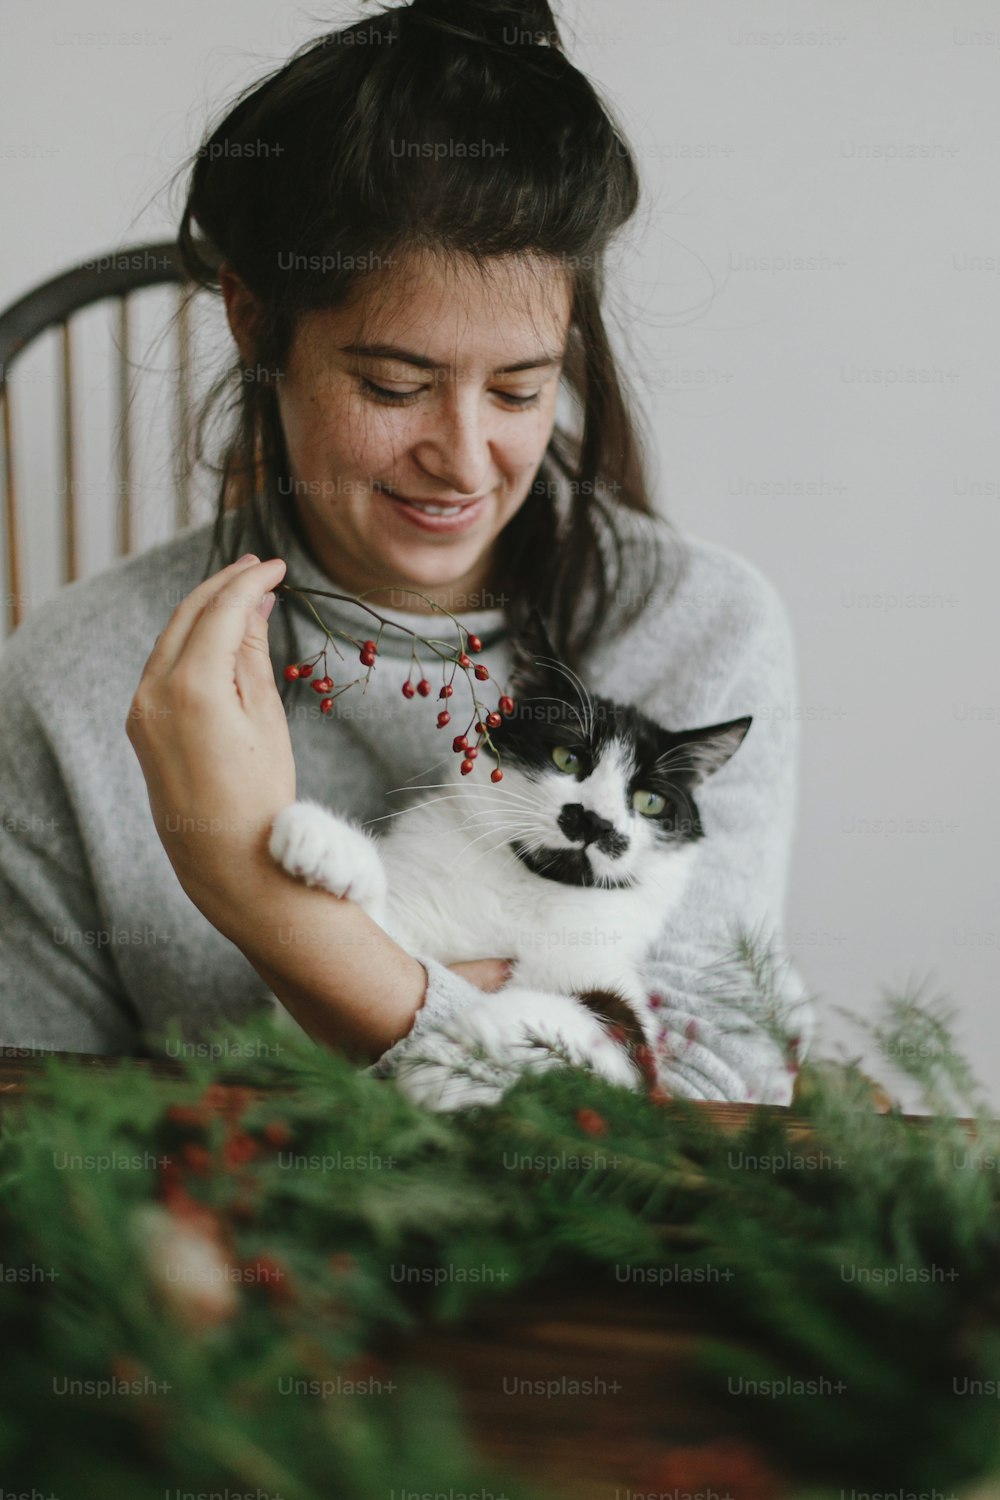 집에서 귀여운 고양이와 함께 크리스마스 화환 만들기, 휴일 강림. 빨간 열매와 녹색 가지를 들고 사랑스러운 고양이 도우미와 함께 크리스마스 화환을 만드는 행복한 여자. 세련 된 정통 이미지